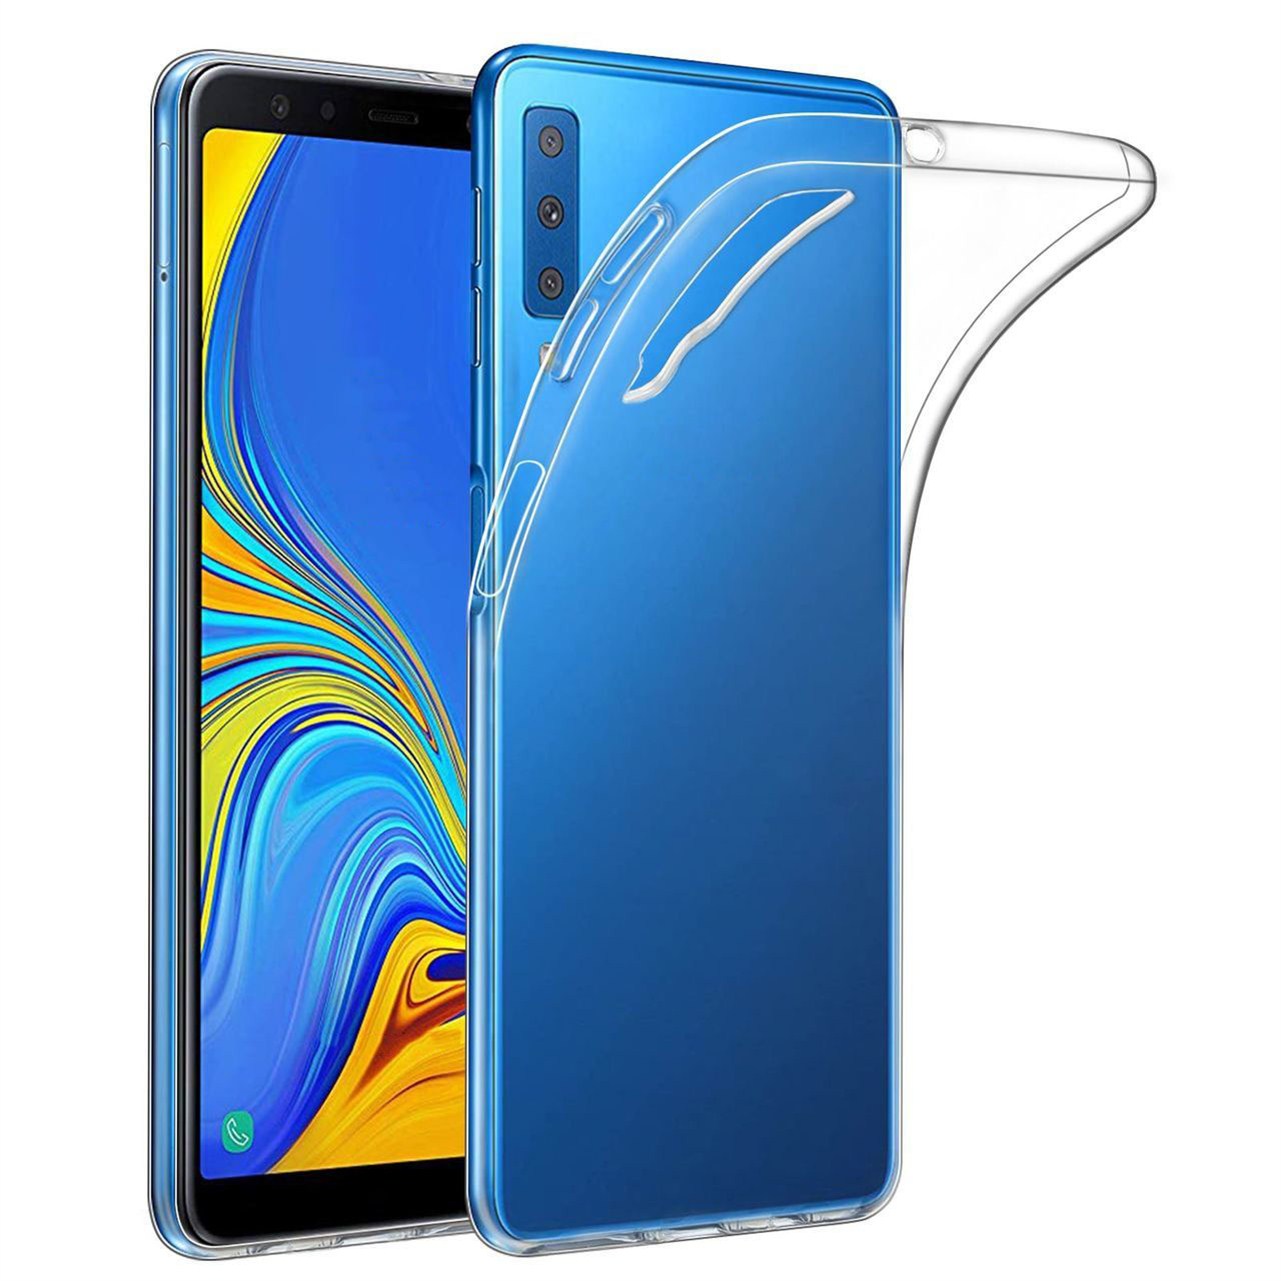 Ốp lưng cho Samsung Galaxy A7 2018 dẻo, trong suốt